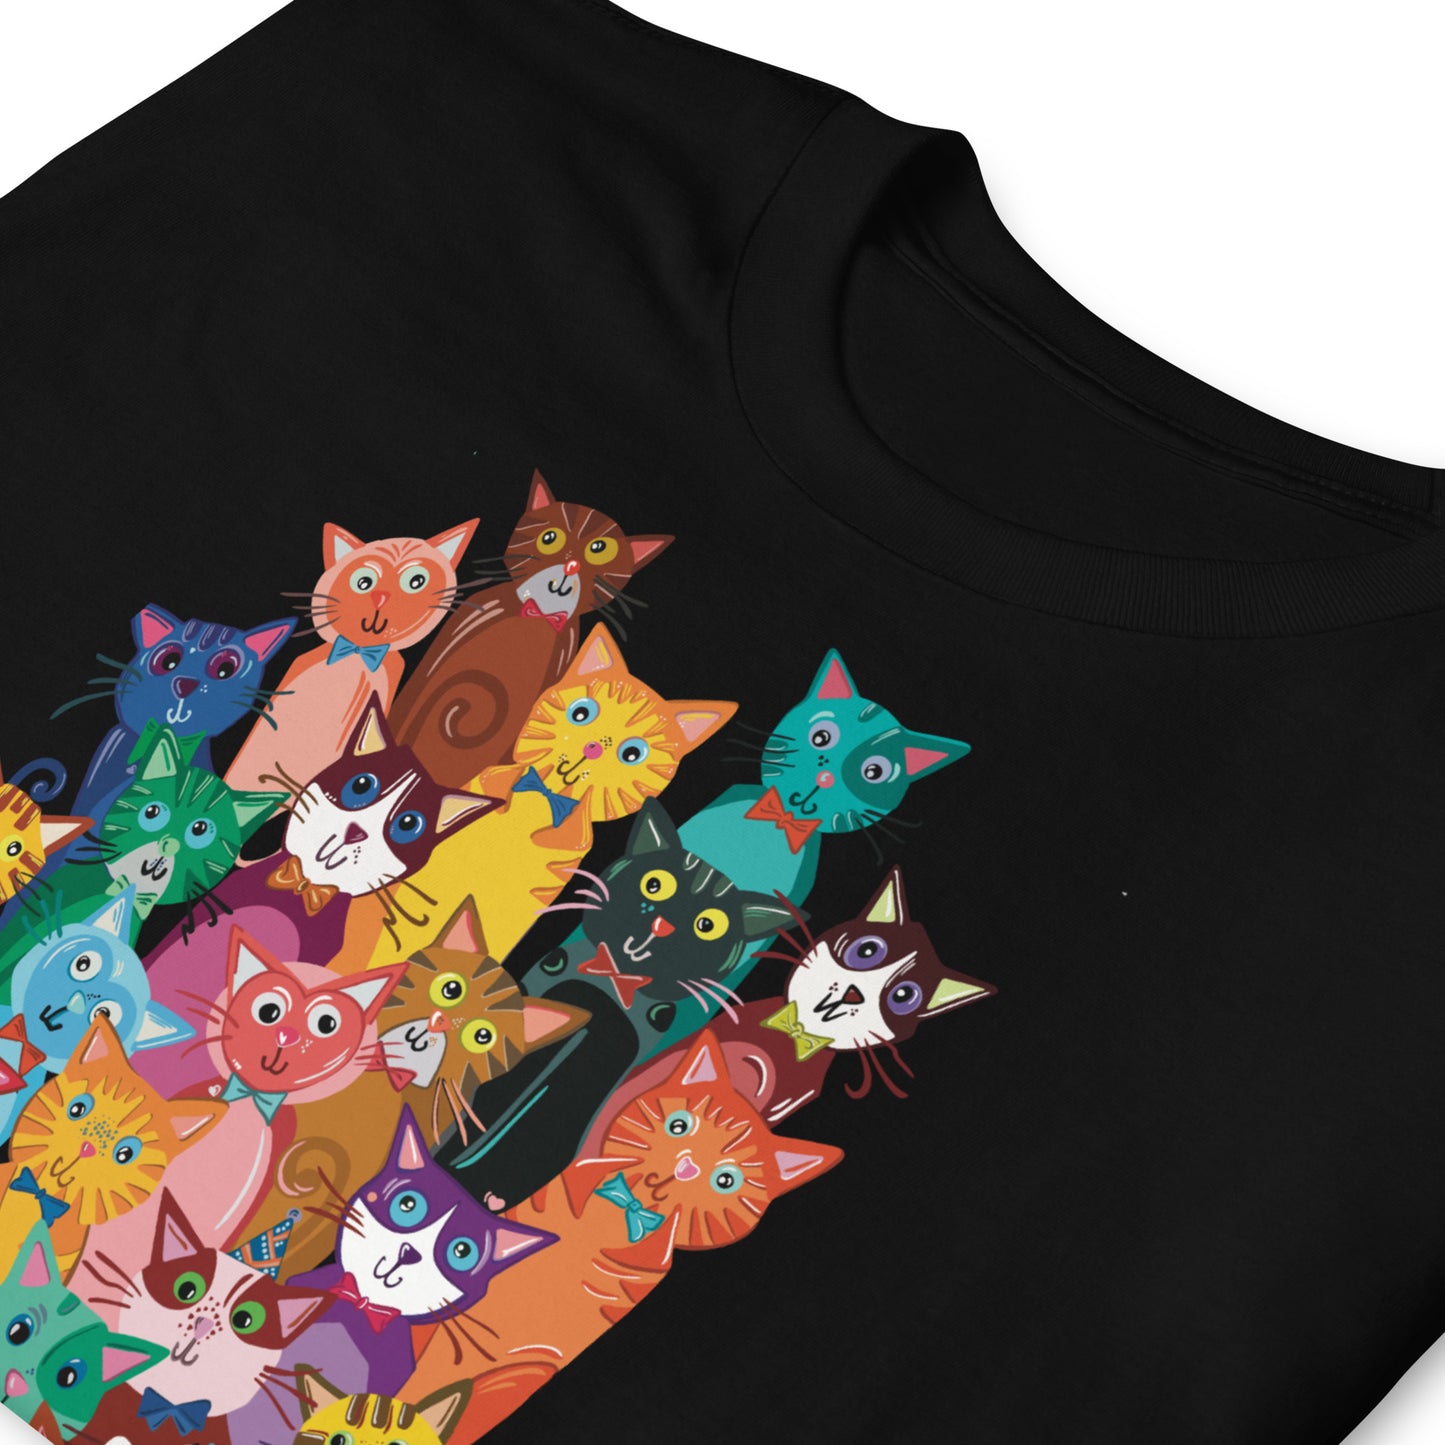 Unisex marškinėliai: katinų krūva